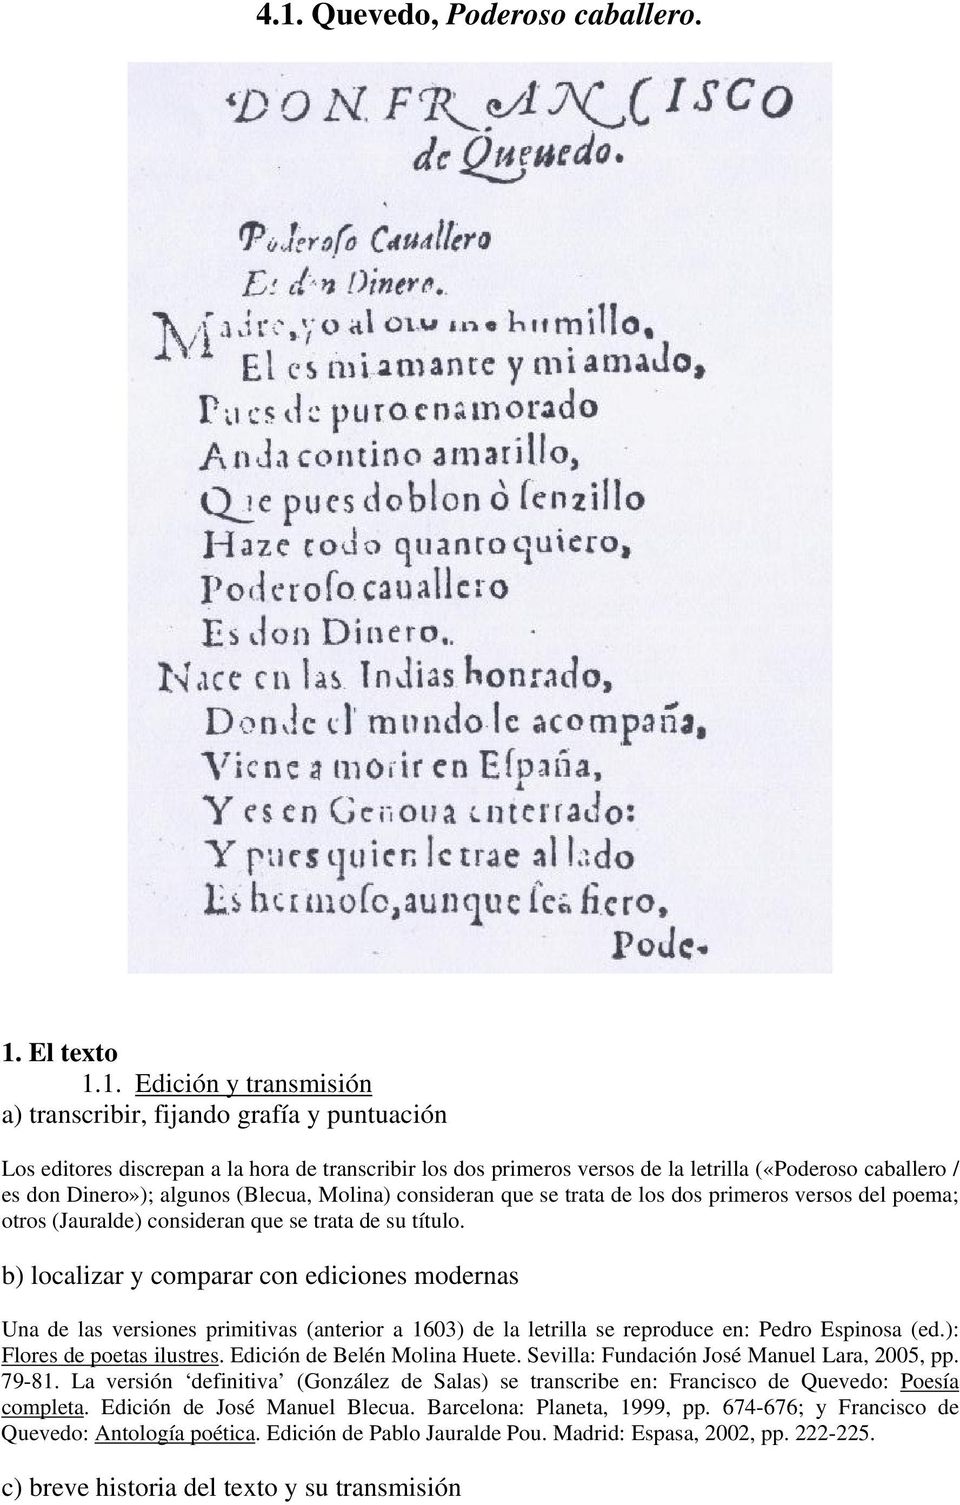 b) localizar y comparar con ediciones modernas Una de las versiones primitivas (anterior a 1603) de la letrilla se reproduce en: Pedro Espinosa (ed.): Flores de poetas ilustres.